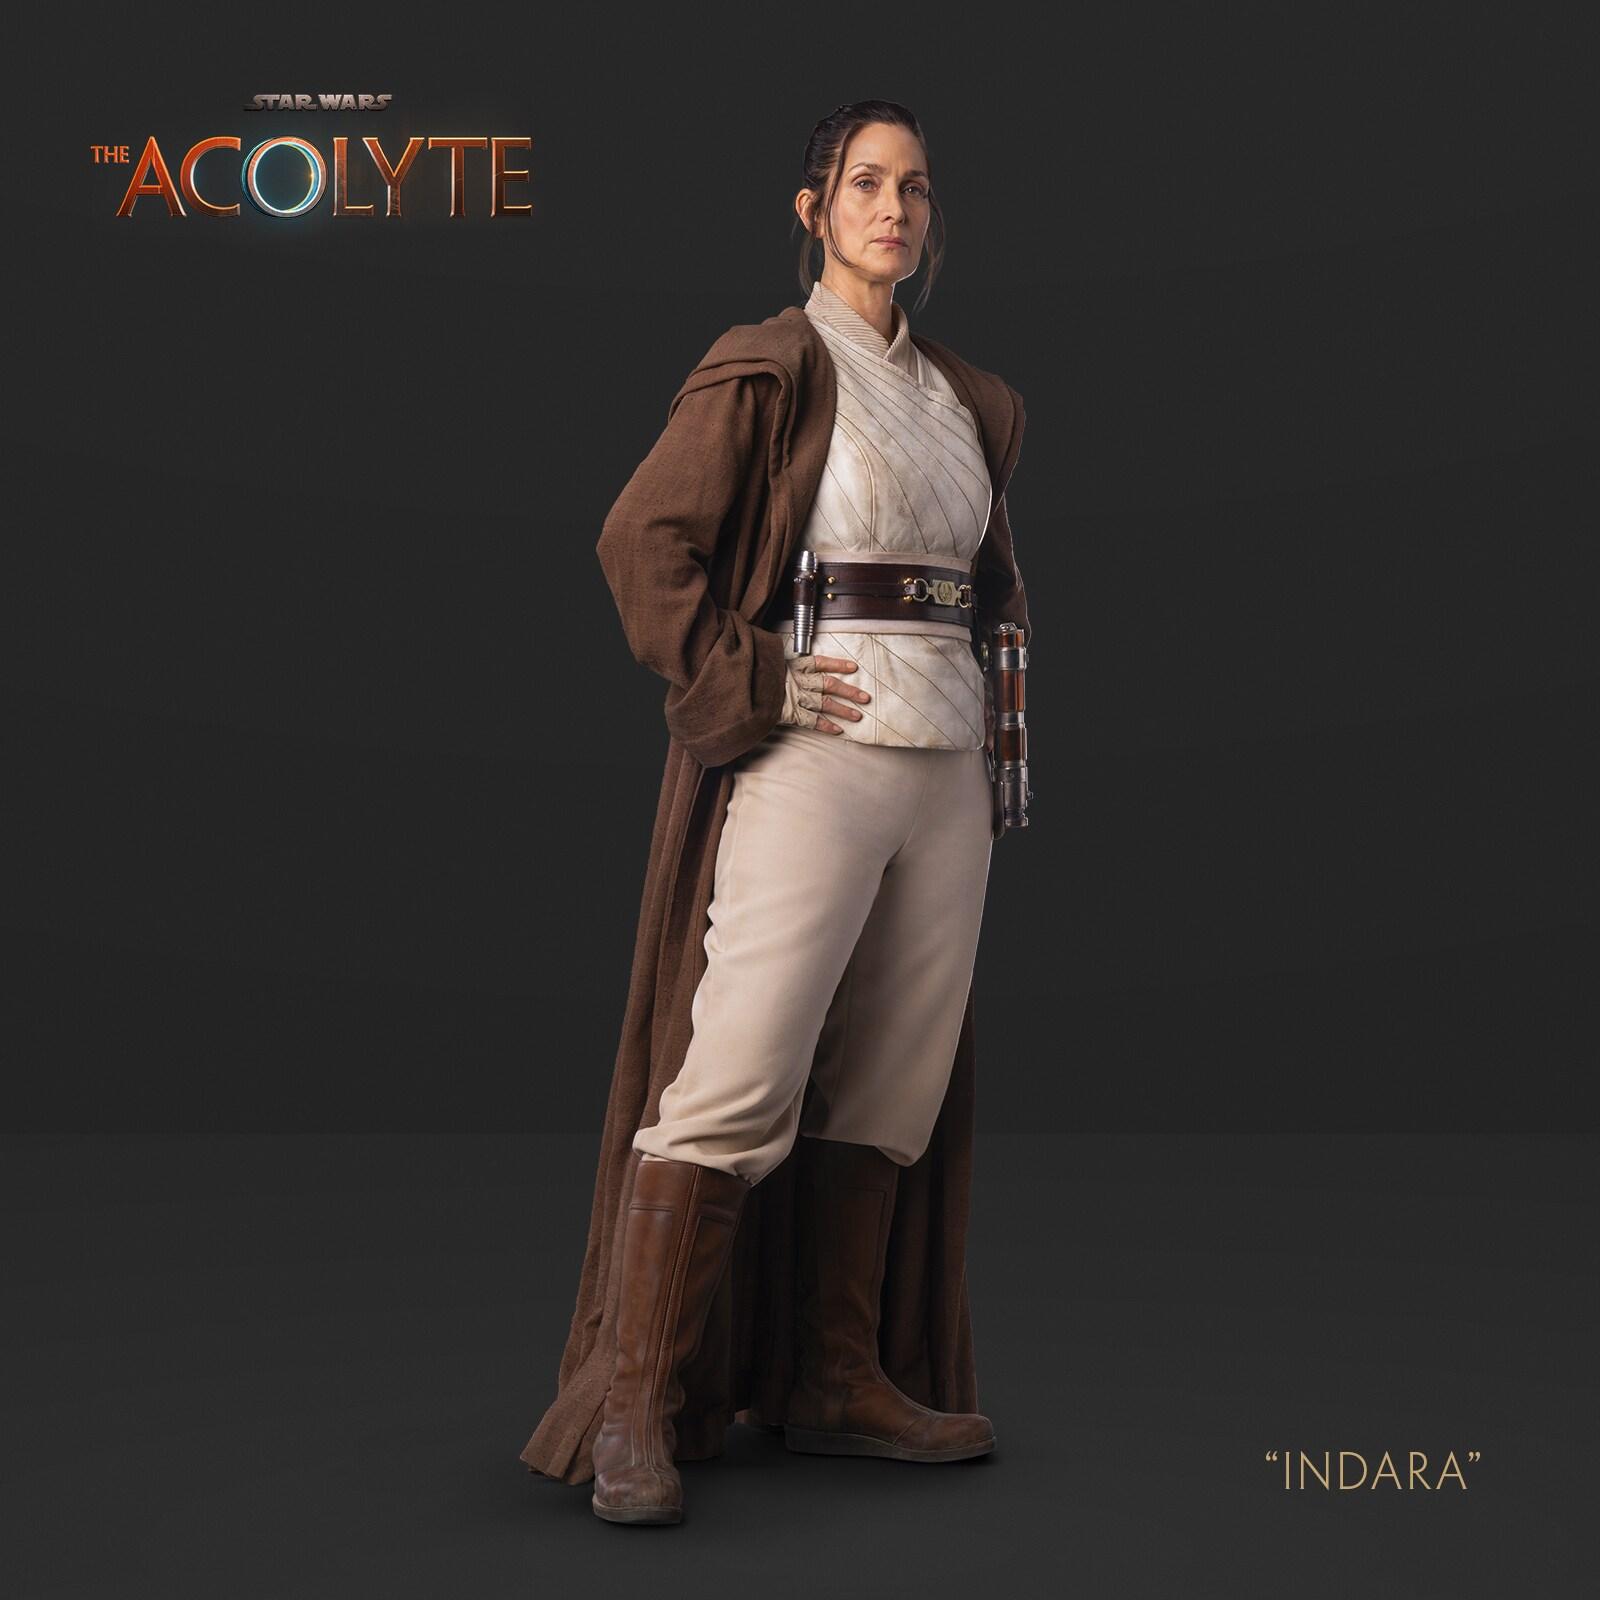 Star Wars 'The Acolyte' - Indara Belt Buckle 3d model